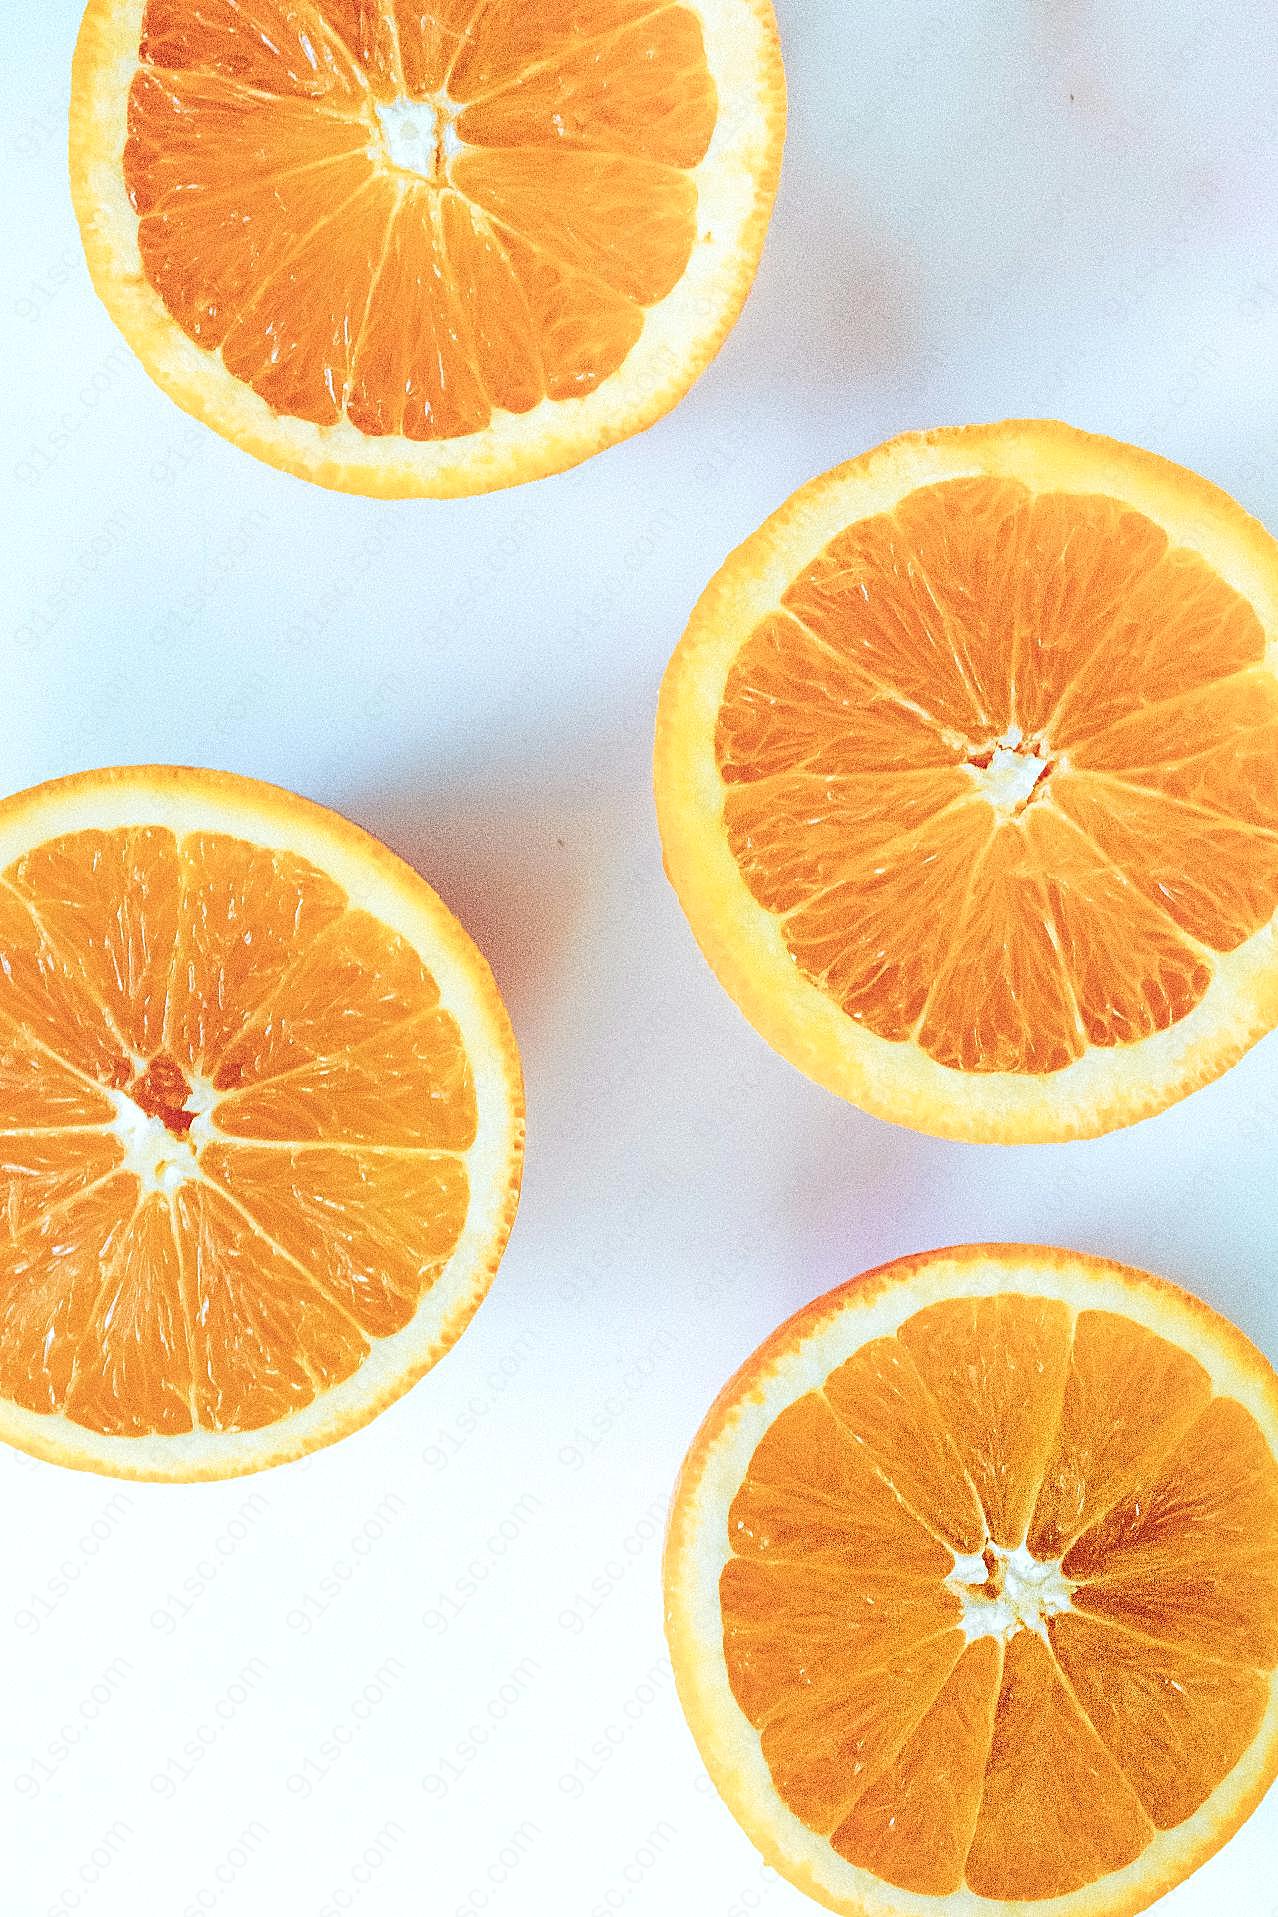 橙子切片竖屏图片水果